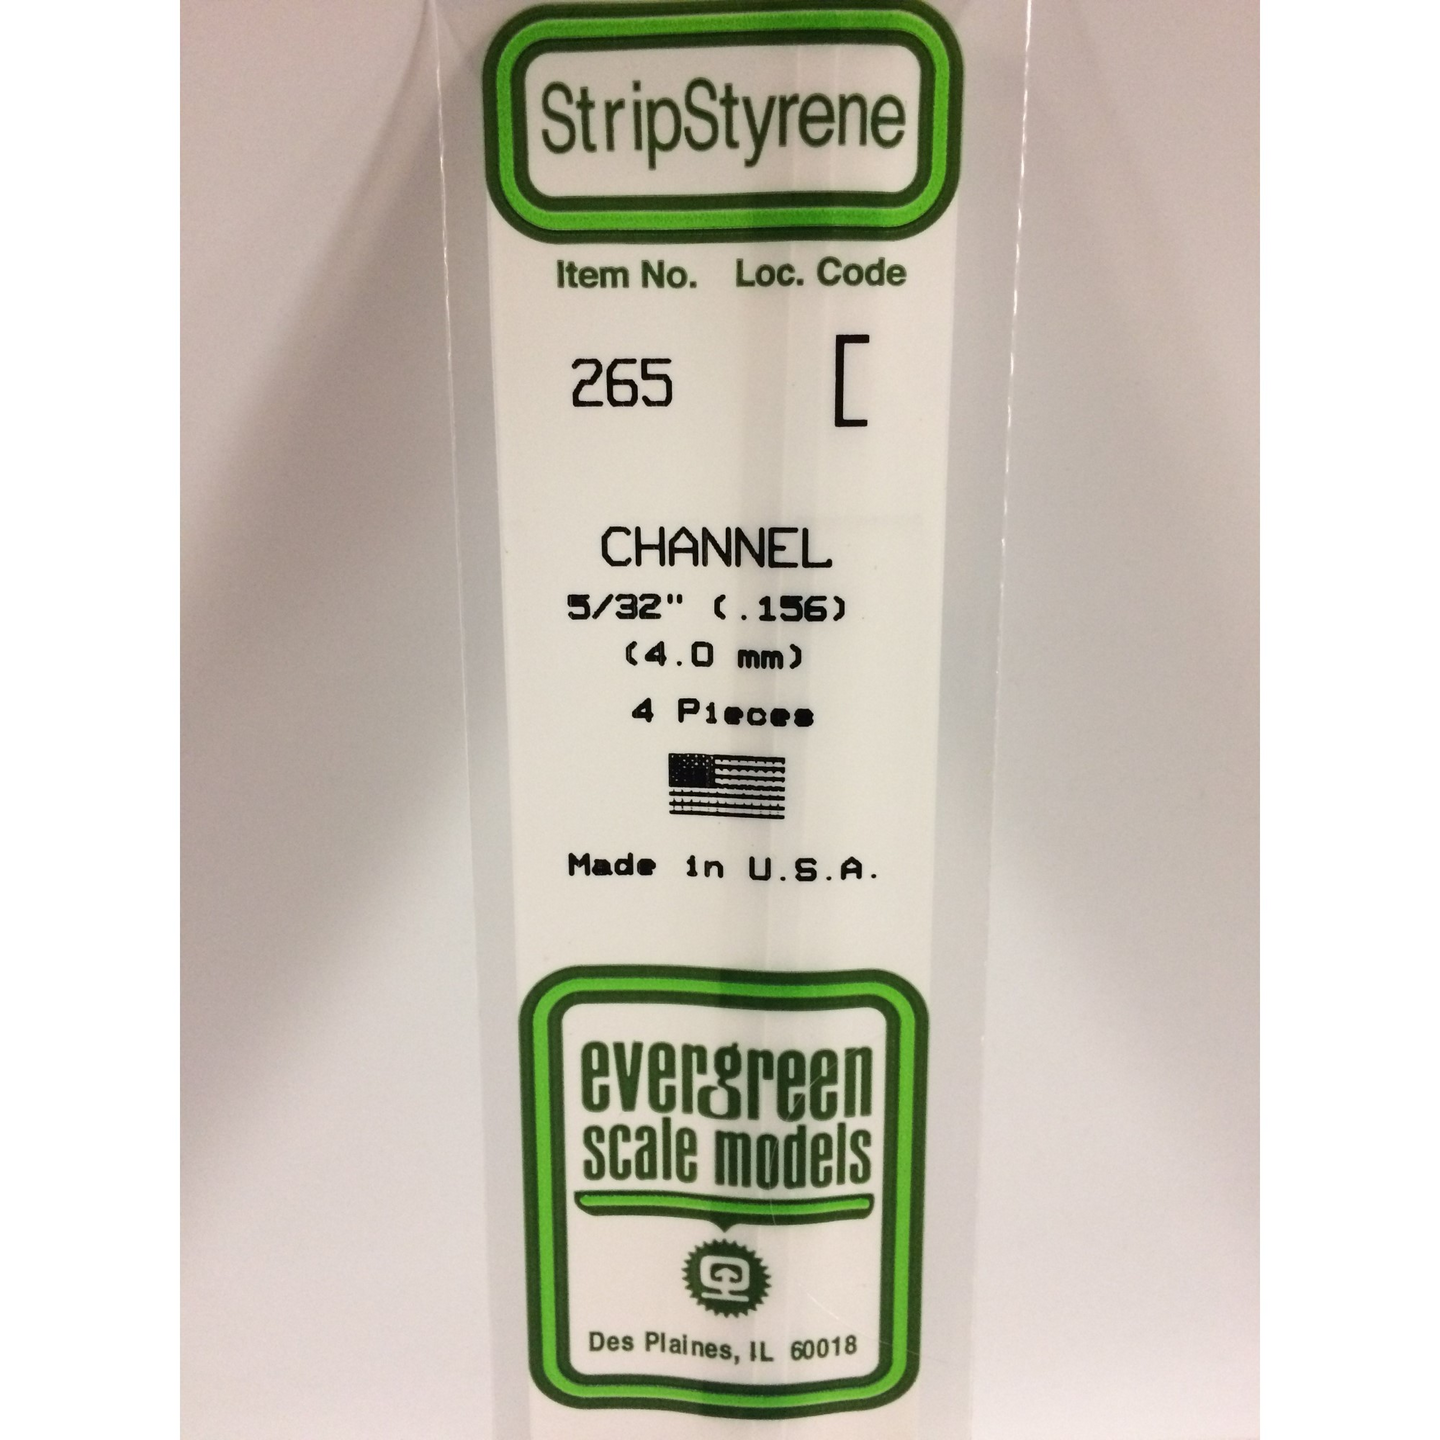 Evergreen 265 Styrene Plastic Channel 0.156